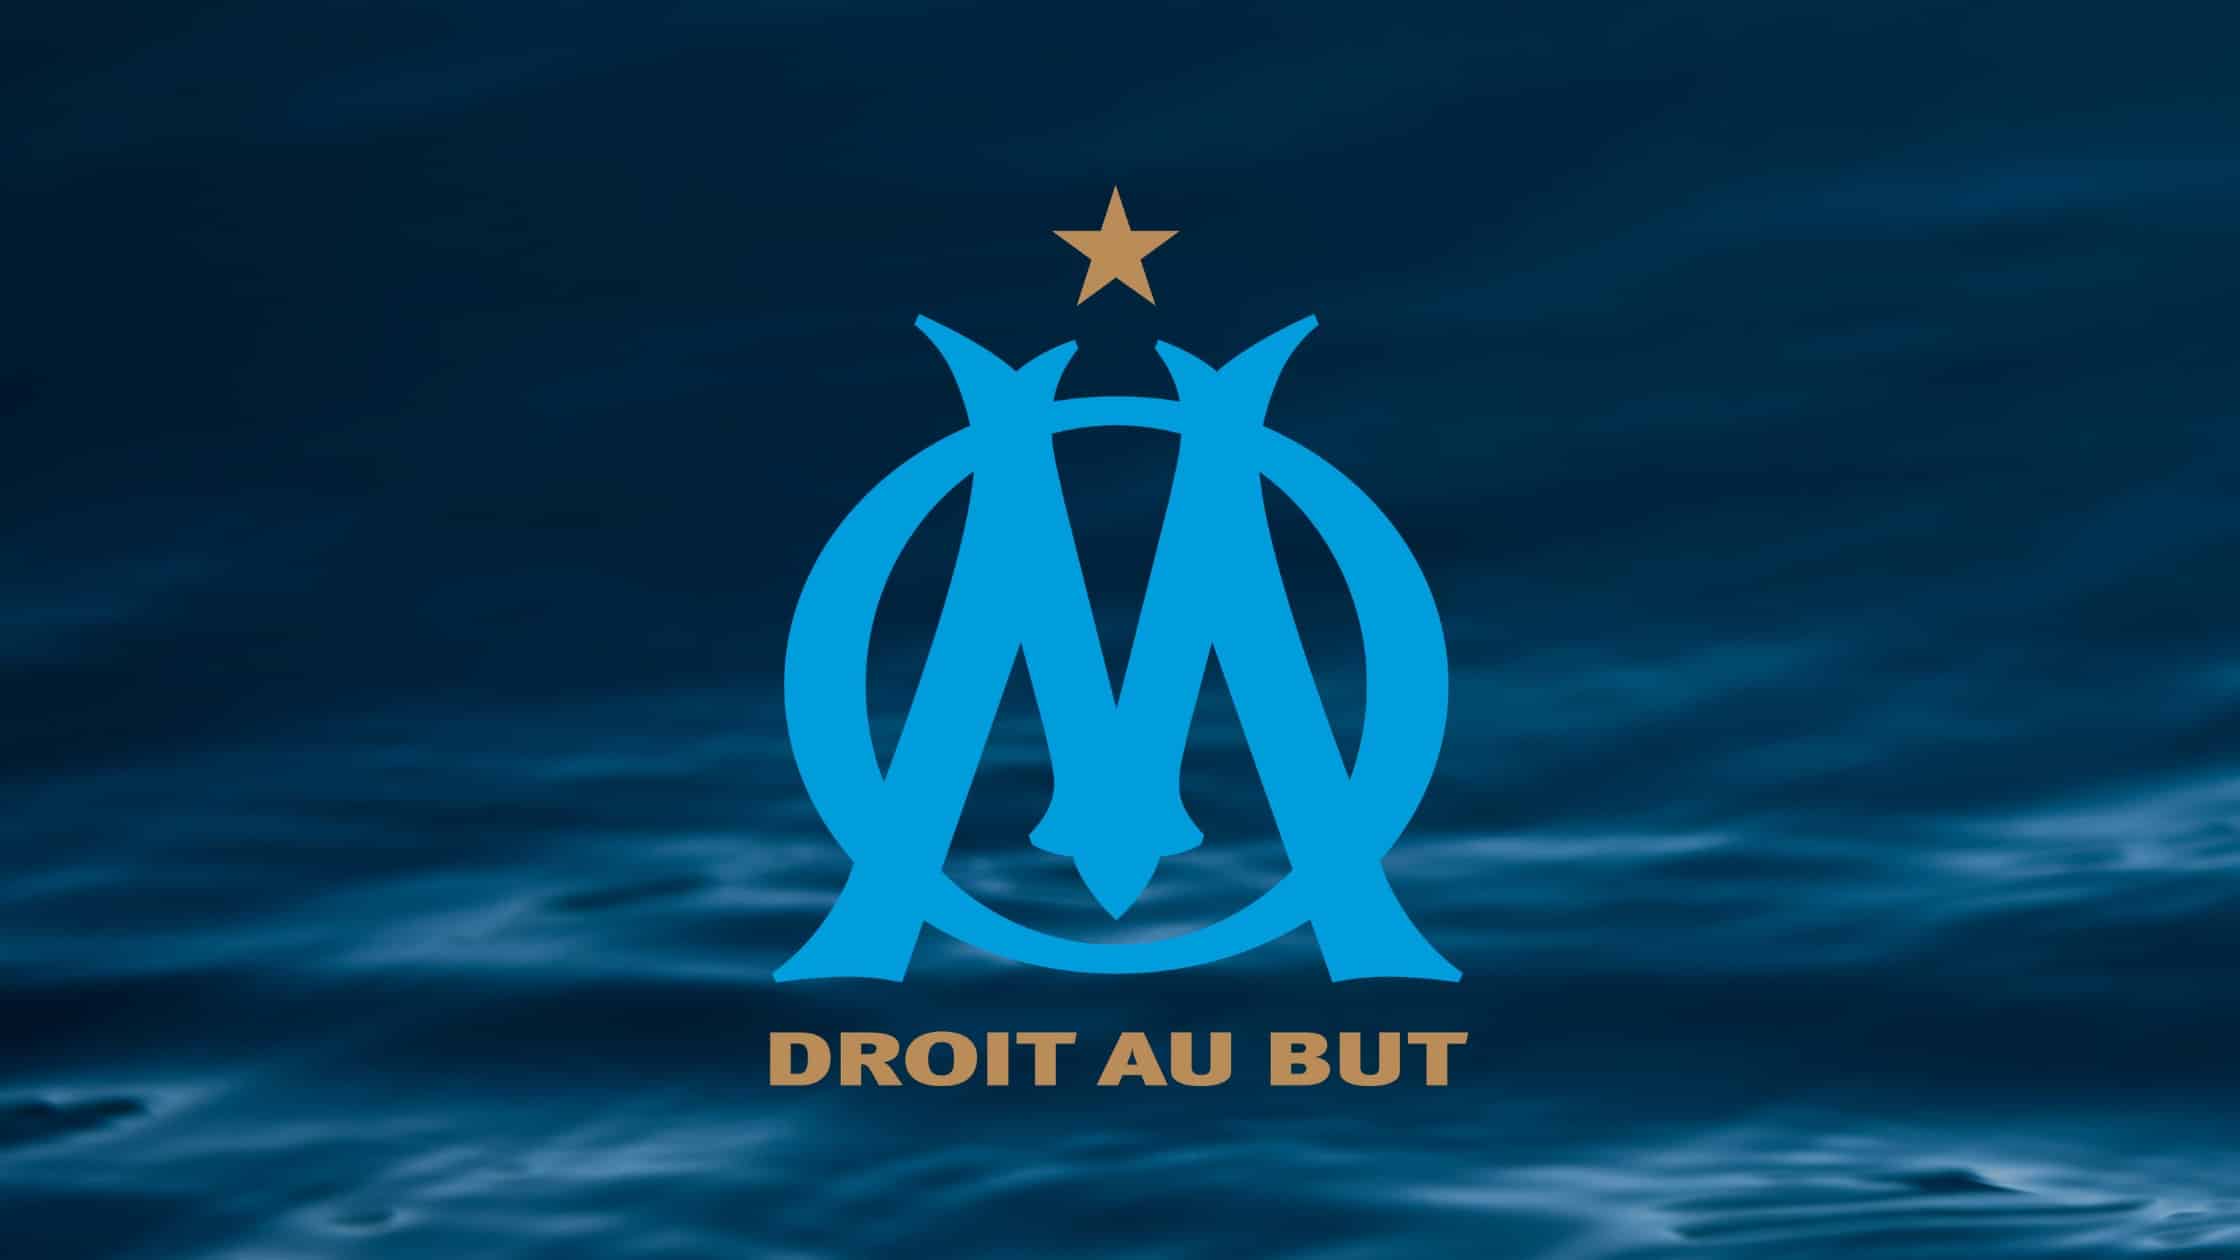 Olympique Marseille ist ein französischer Traditionsverein, der 1992/93 die erste Champions League gewann.